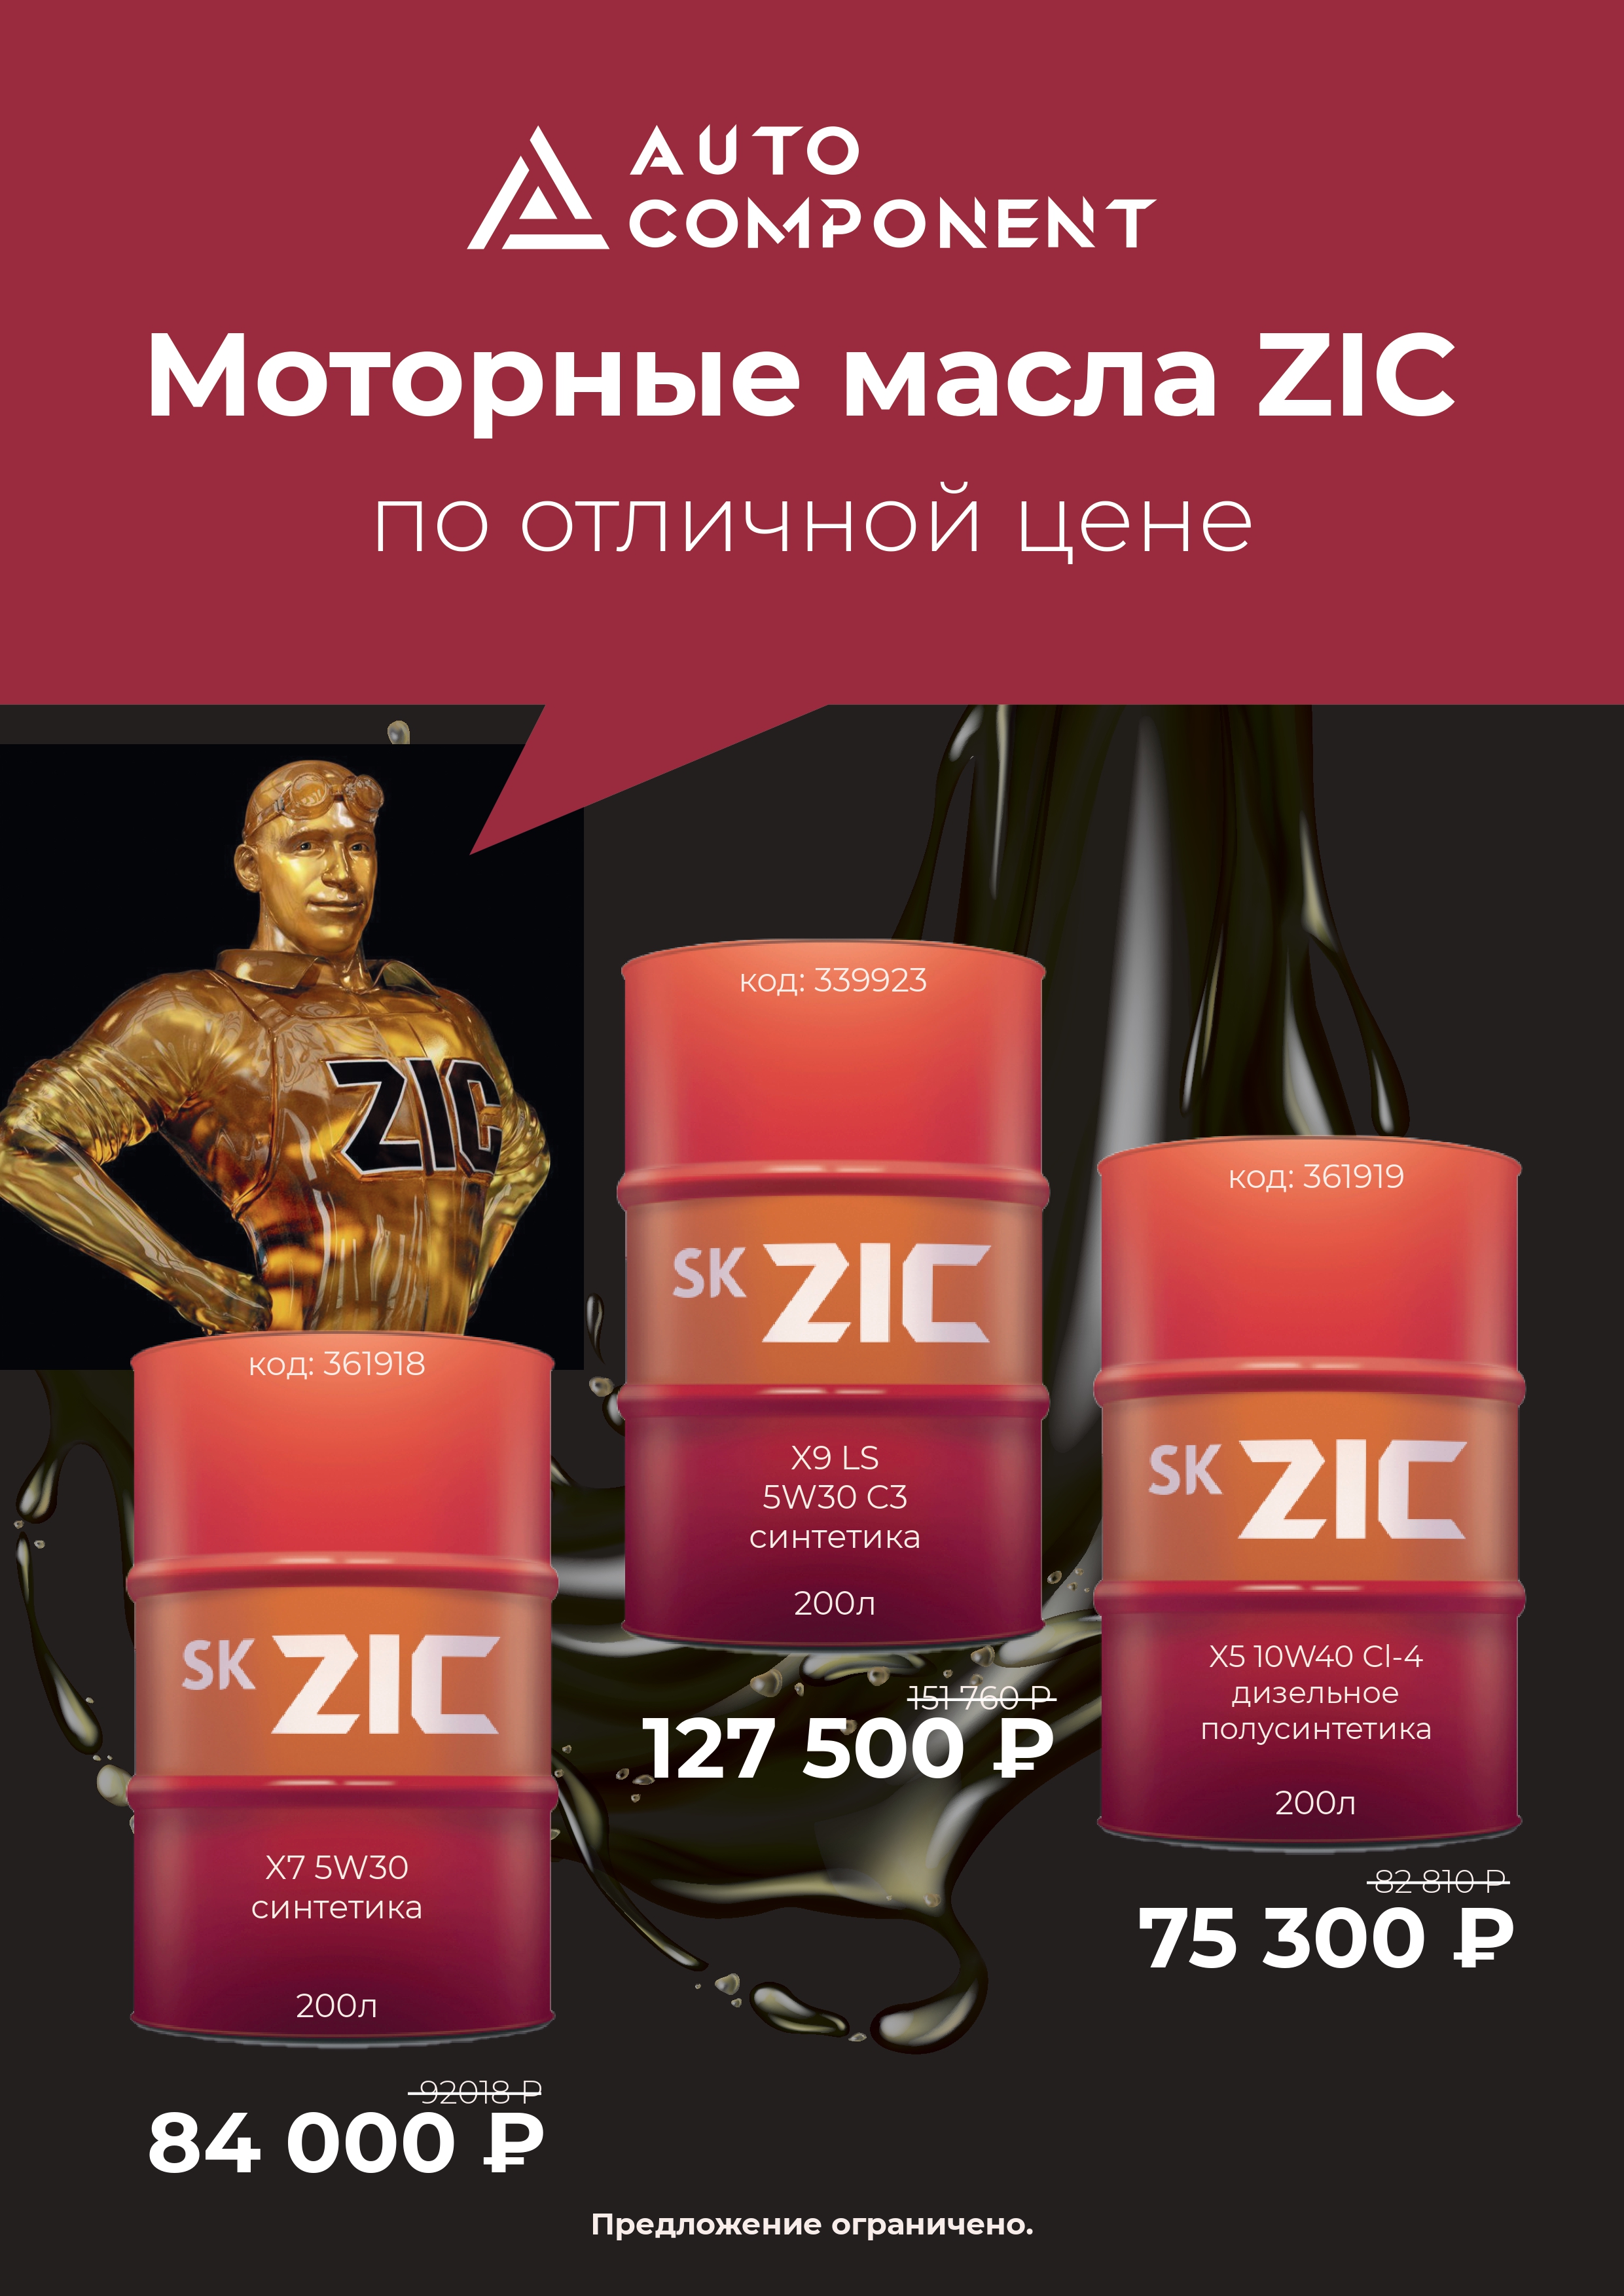 ZIC моторные масла в 200л бочках по отличной цене!